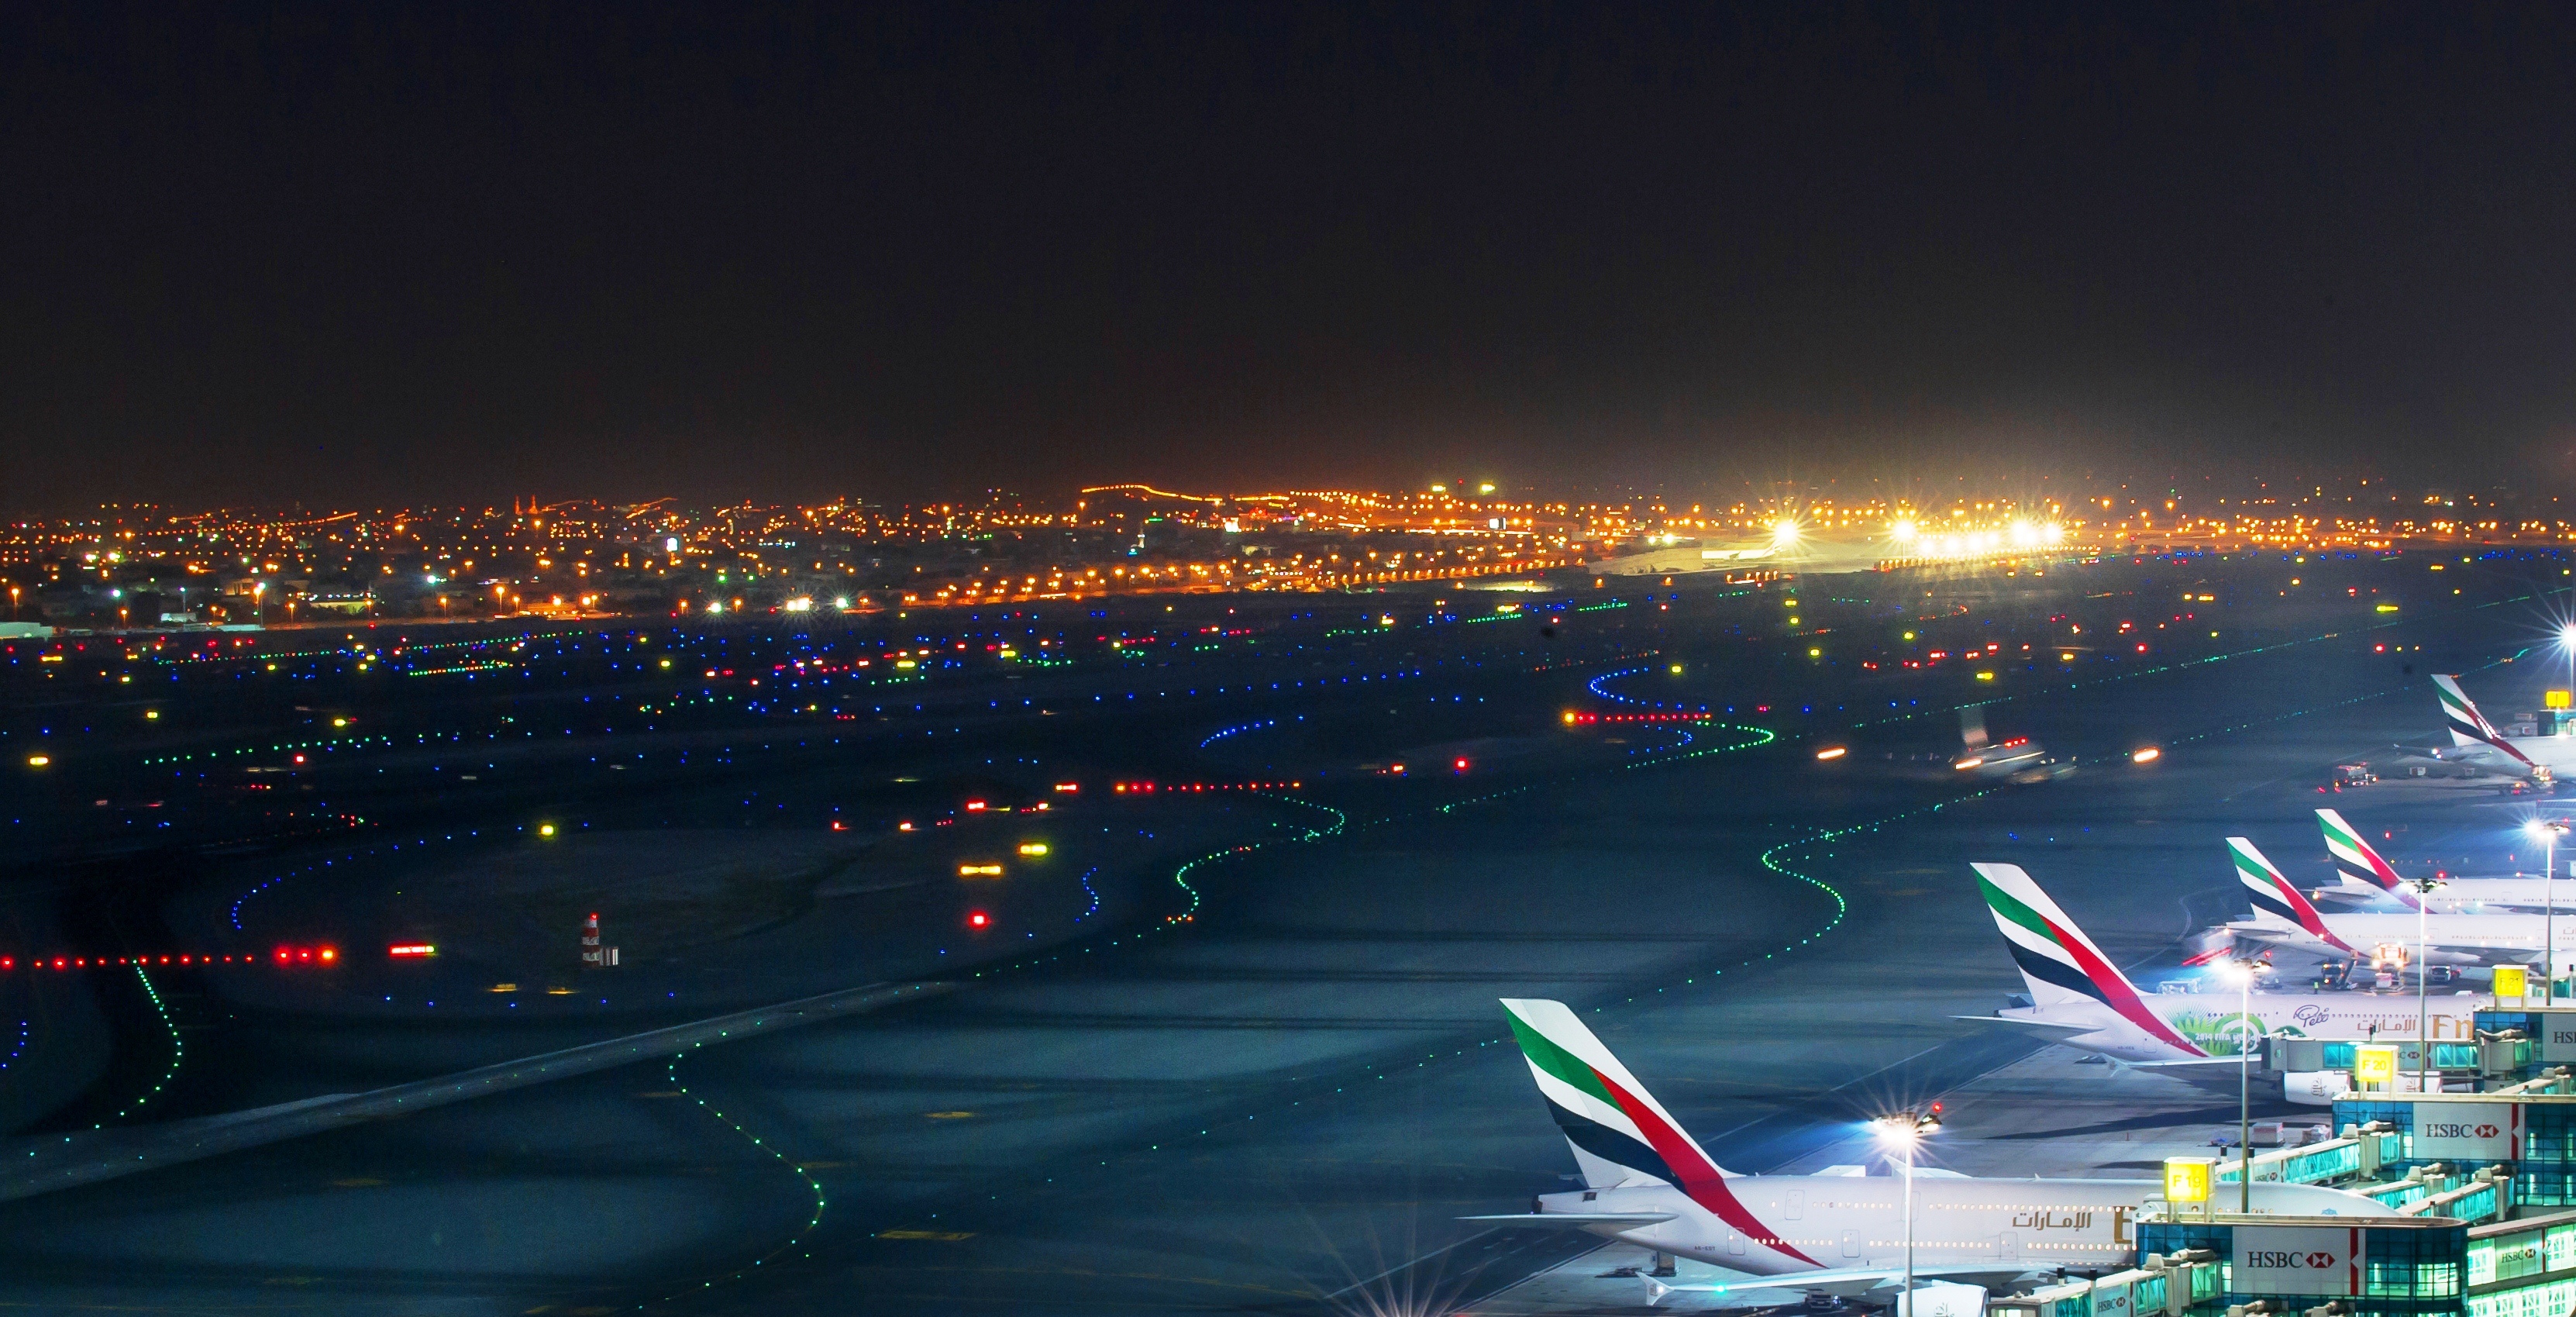 Dubaï Airport : une des pistes fermée pour travaux en 2019